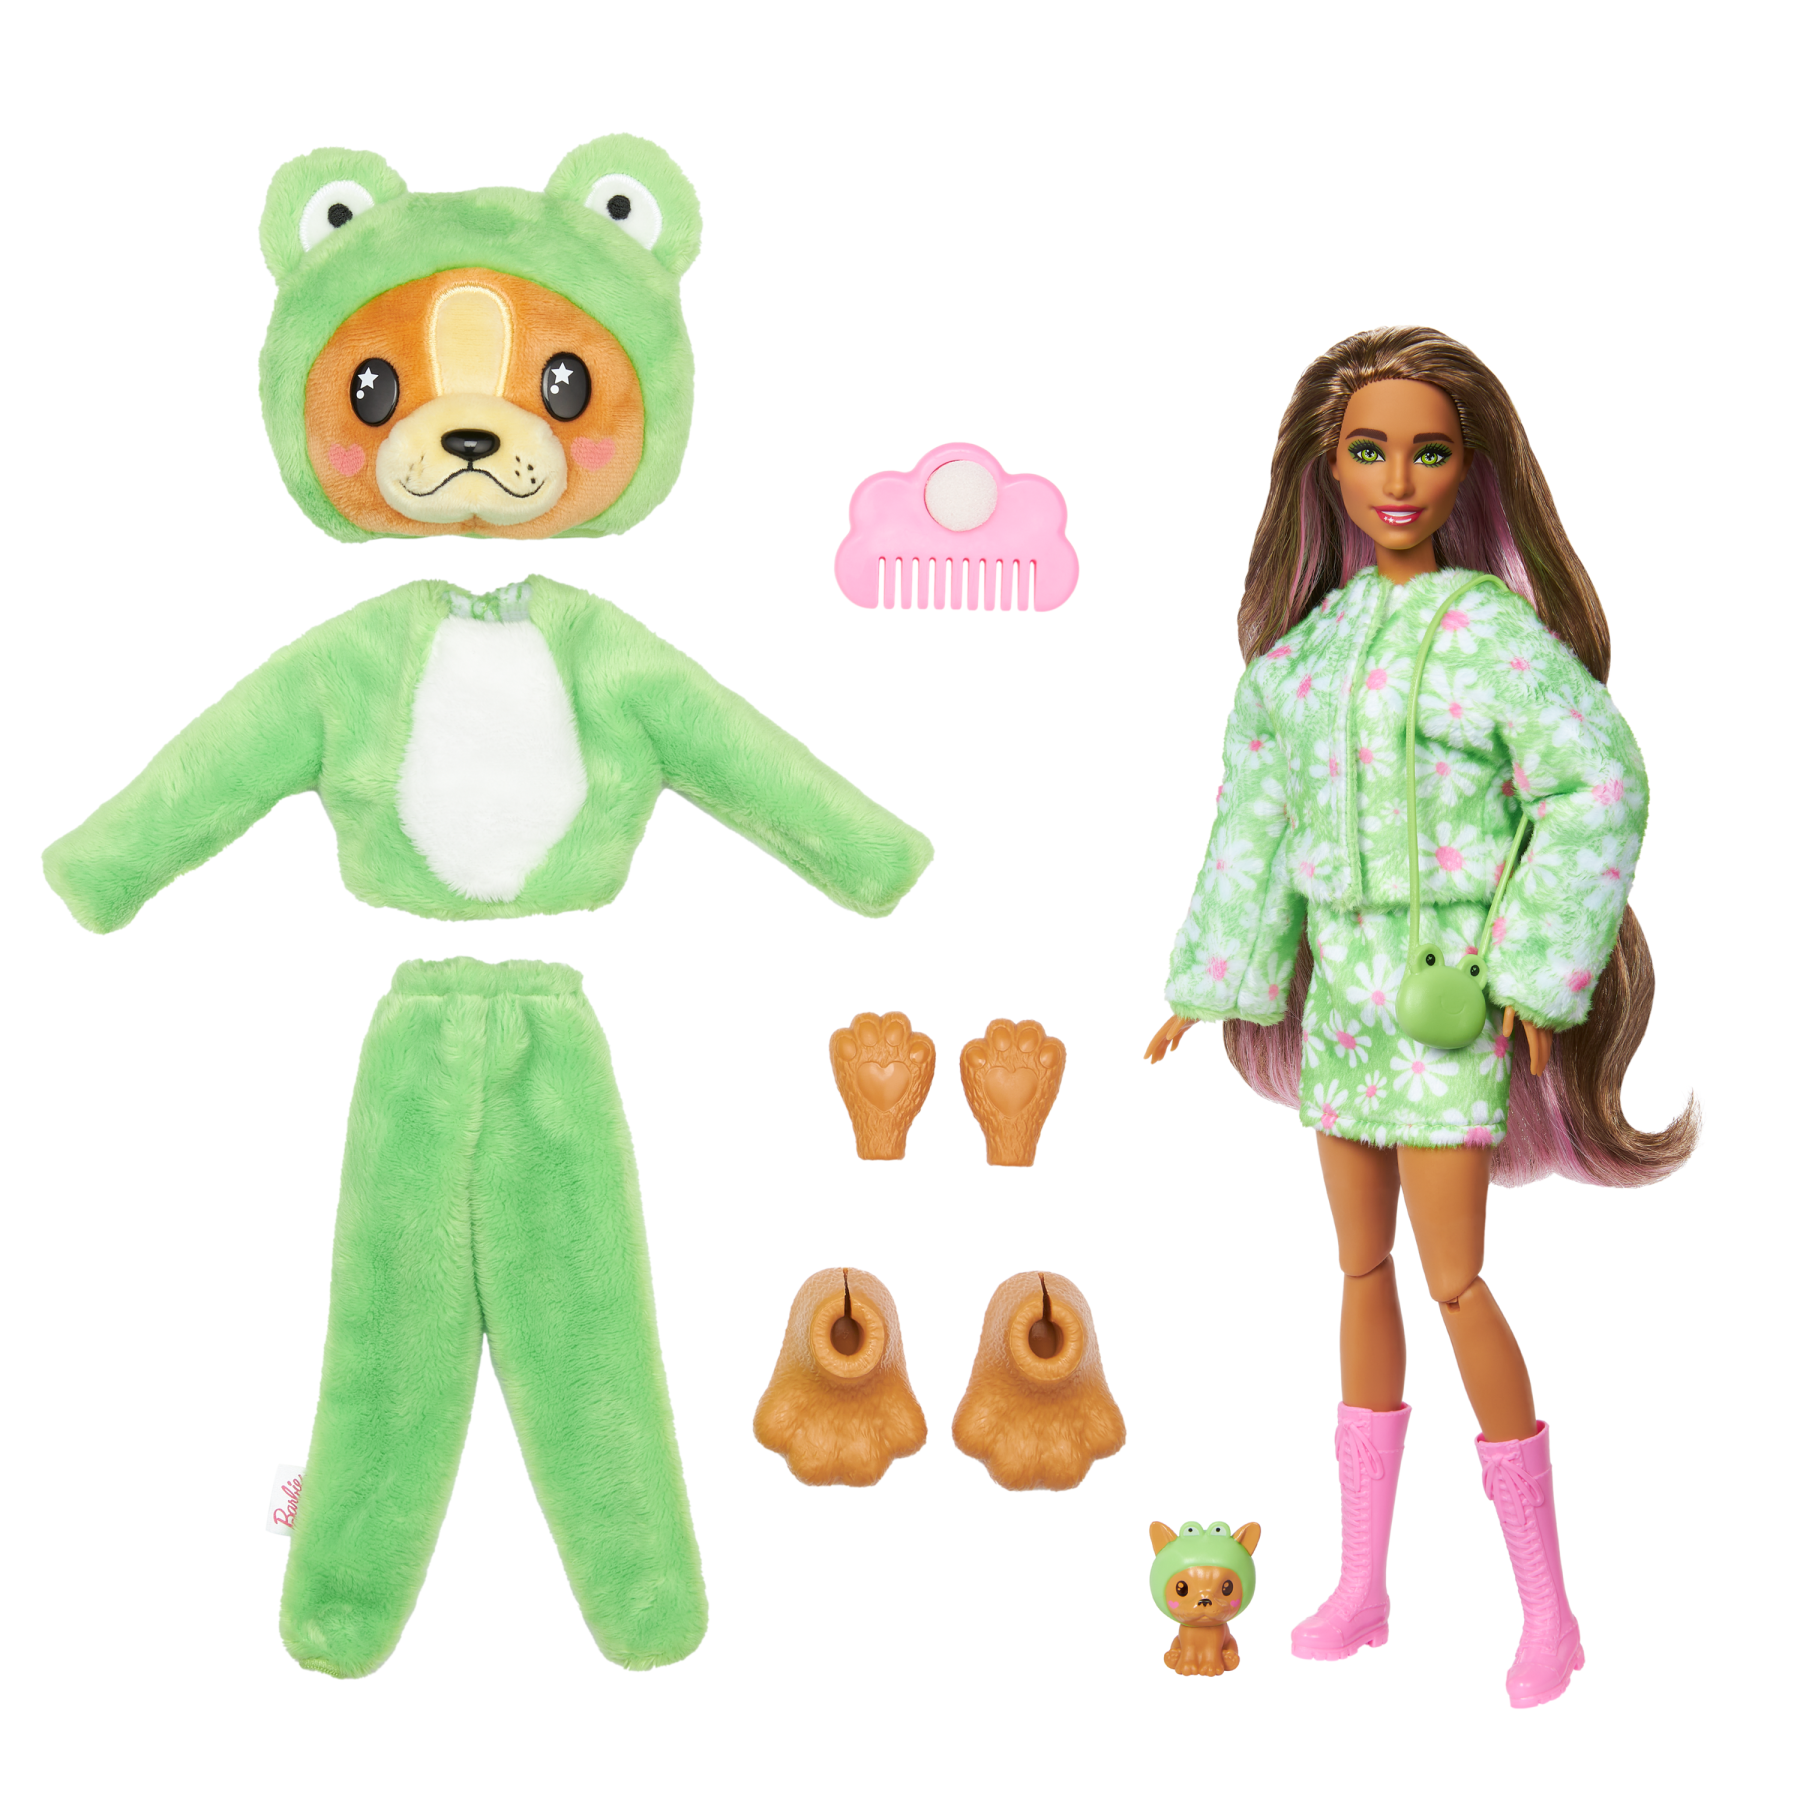 Barbie cutie reveal - bambola con costume di peluche da cagnolino-rana e 10 accessori a sorpresa cambia colore, serie amici cuccioli - Barbie